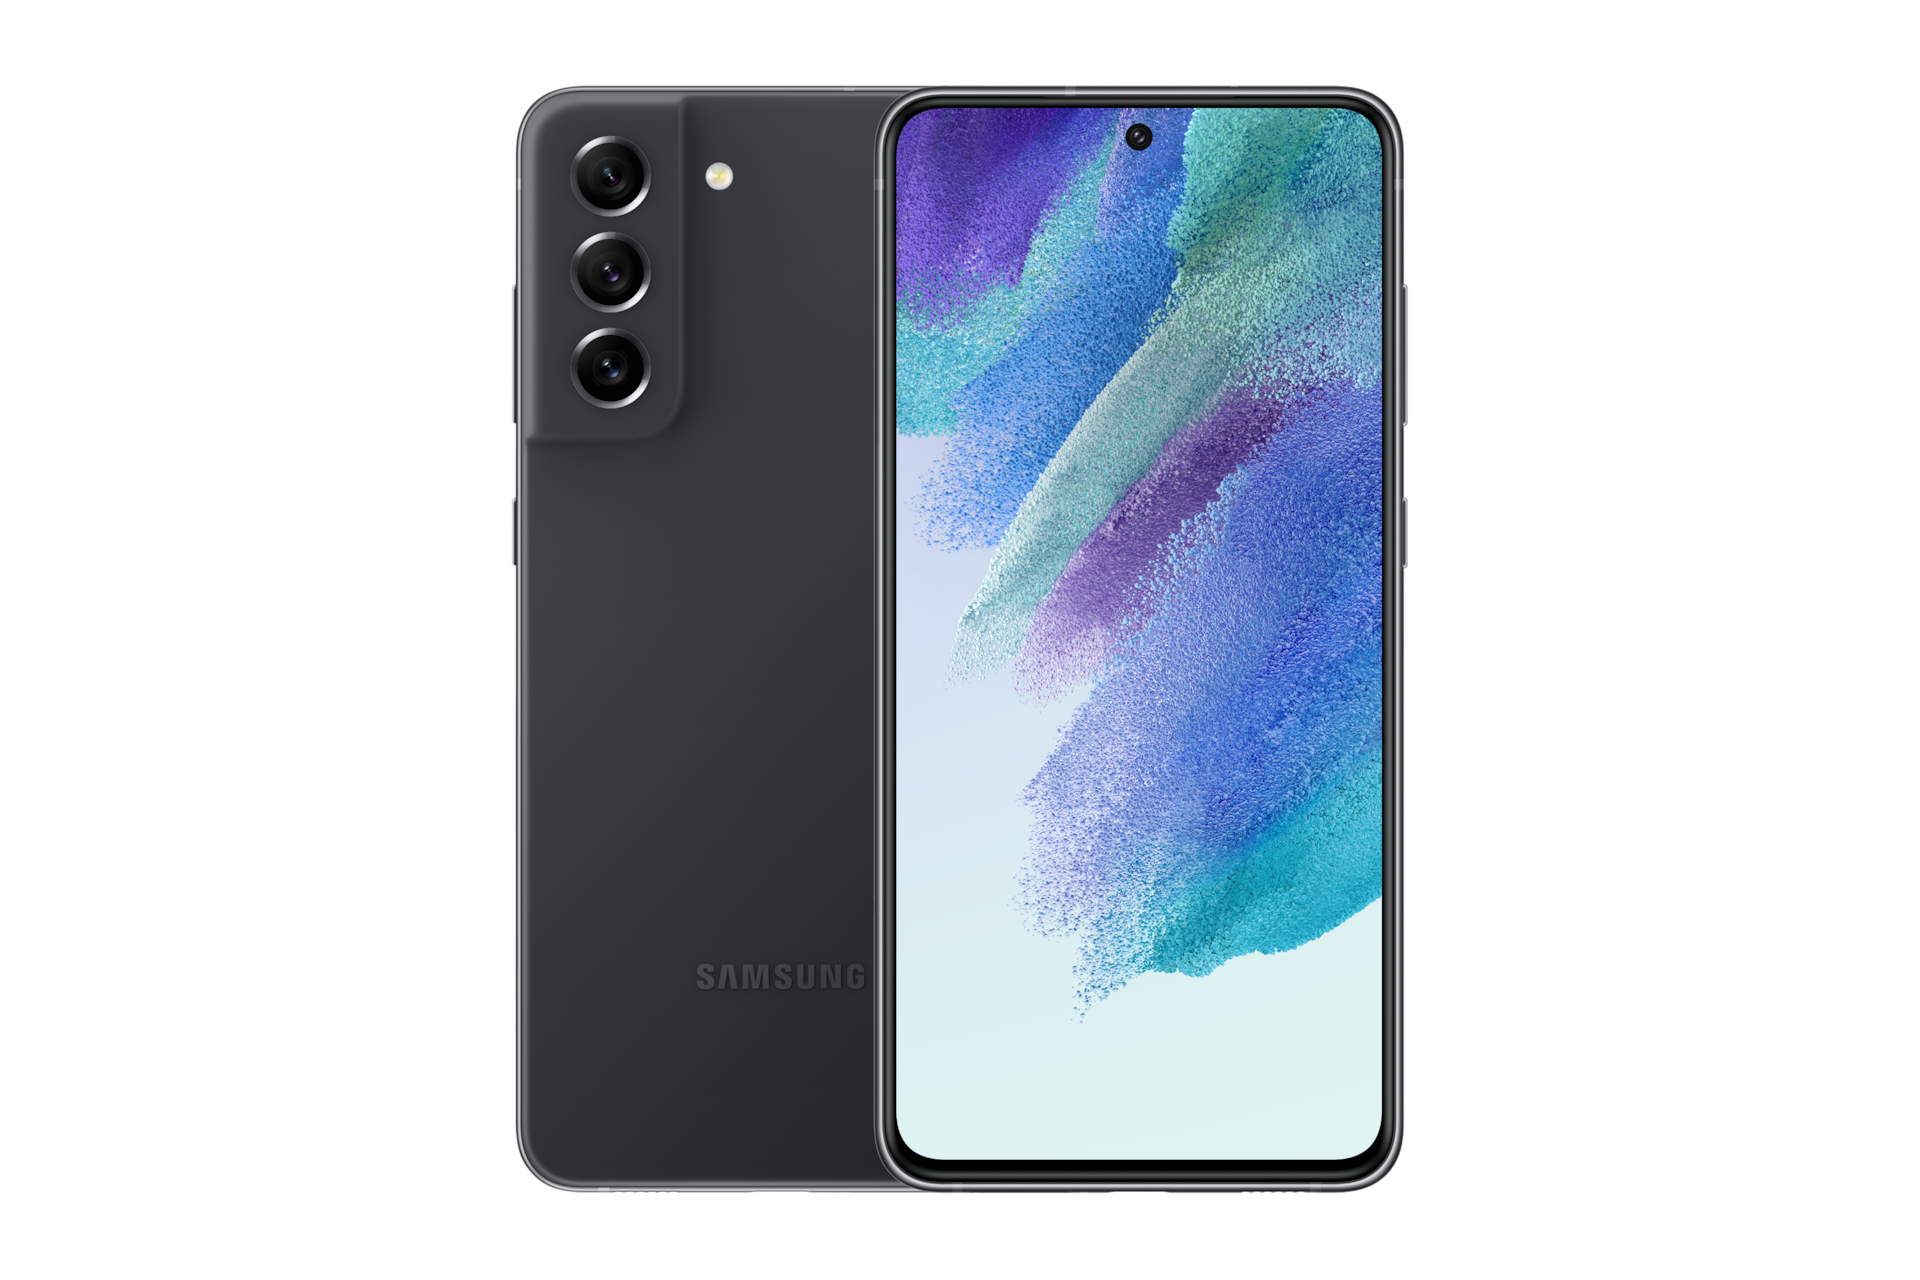 Với Samsung Galaxy S21 FE 5G, bạn sẽ có trải nghiệm smartphone đẳng cấp với màn hình tuyệt đẹp, hiệu suất mạnh mẽ và kết nối 5G nhanh chóng. Hãy cùng khám phá những tính năng tuyệt vời của chiếc điện thoại này trong hình ảnh kèm theo.